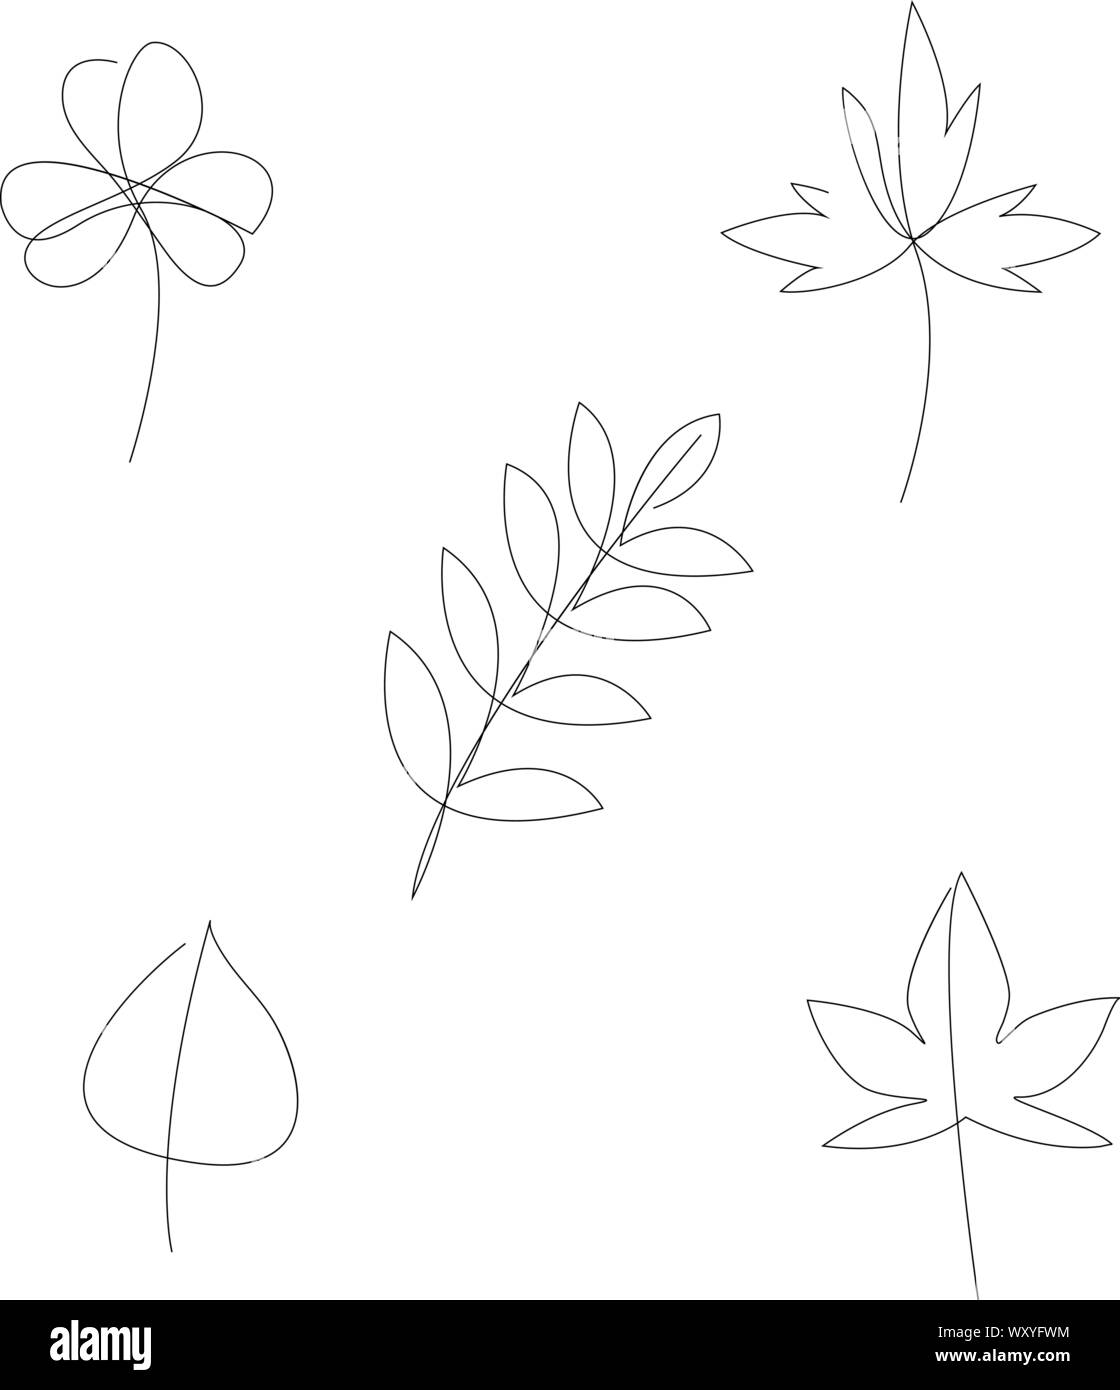 Einfache Blätter eine Strichzeichnung Vector Illustration Stock Vektor